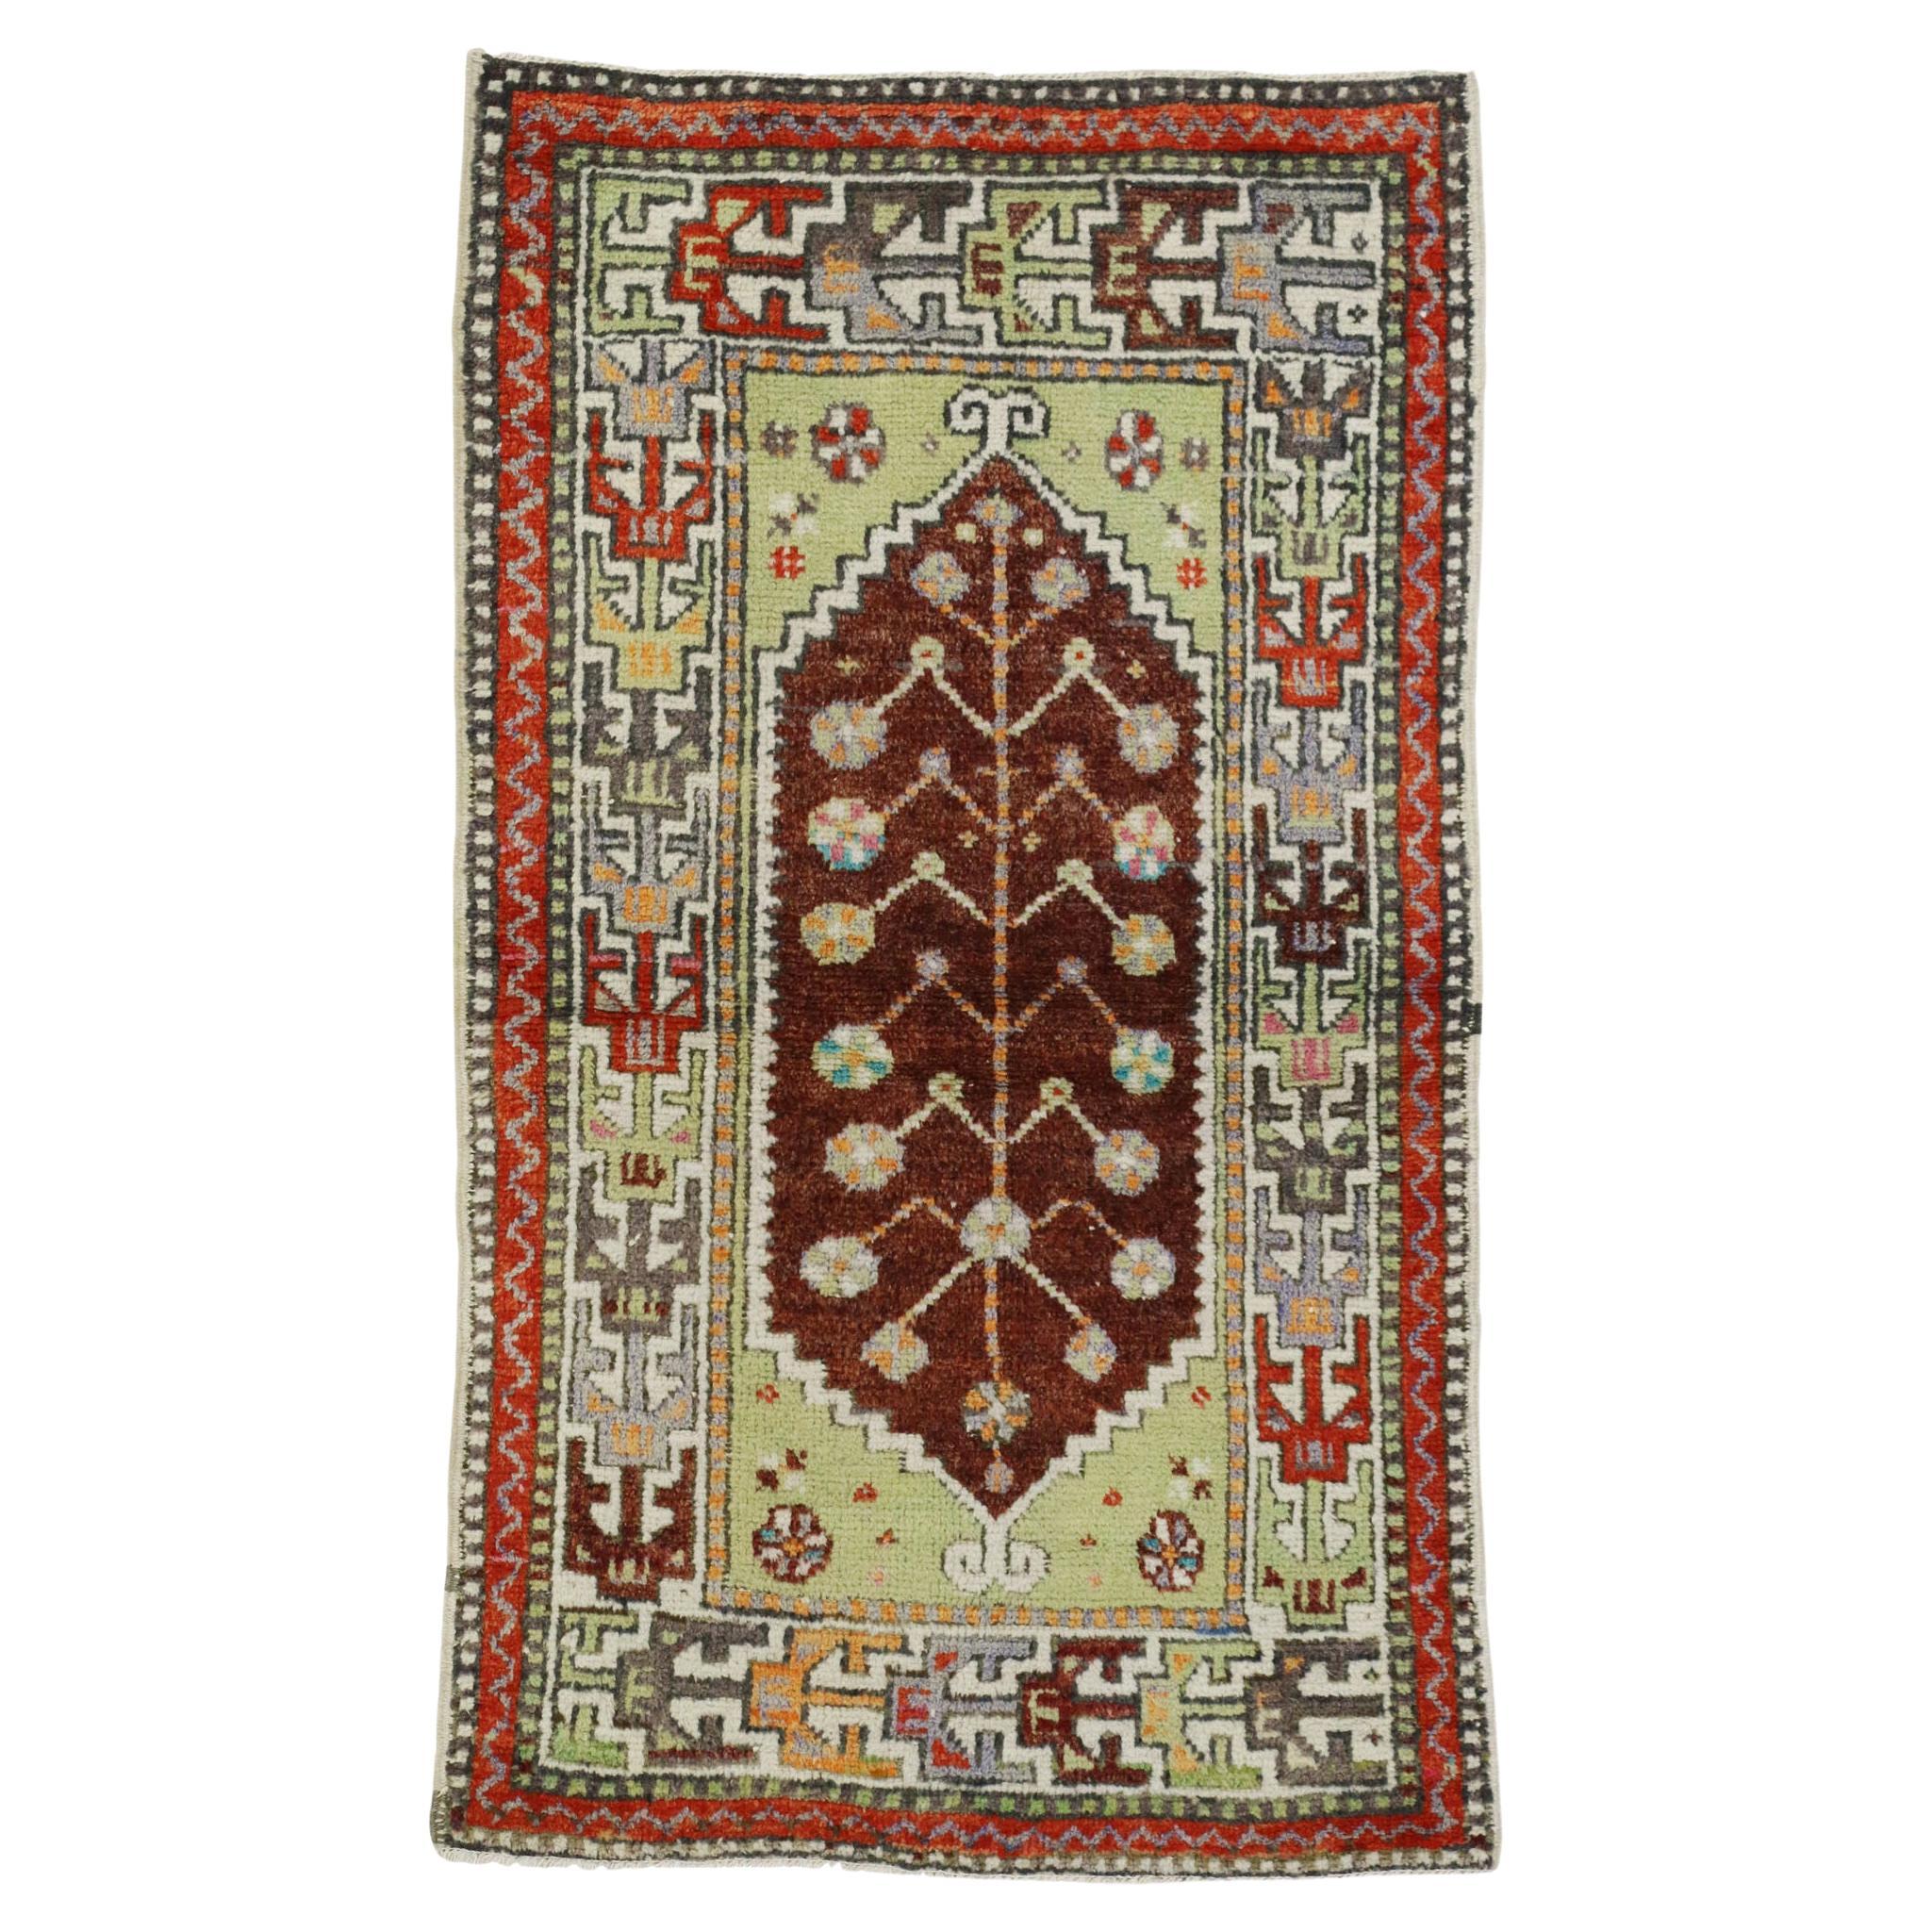 Türkischer Oushak-Teppich im Vintage-Look, bunt kuratiert trifft auf skurrilen Boho